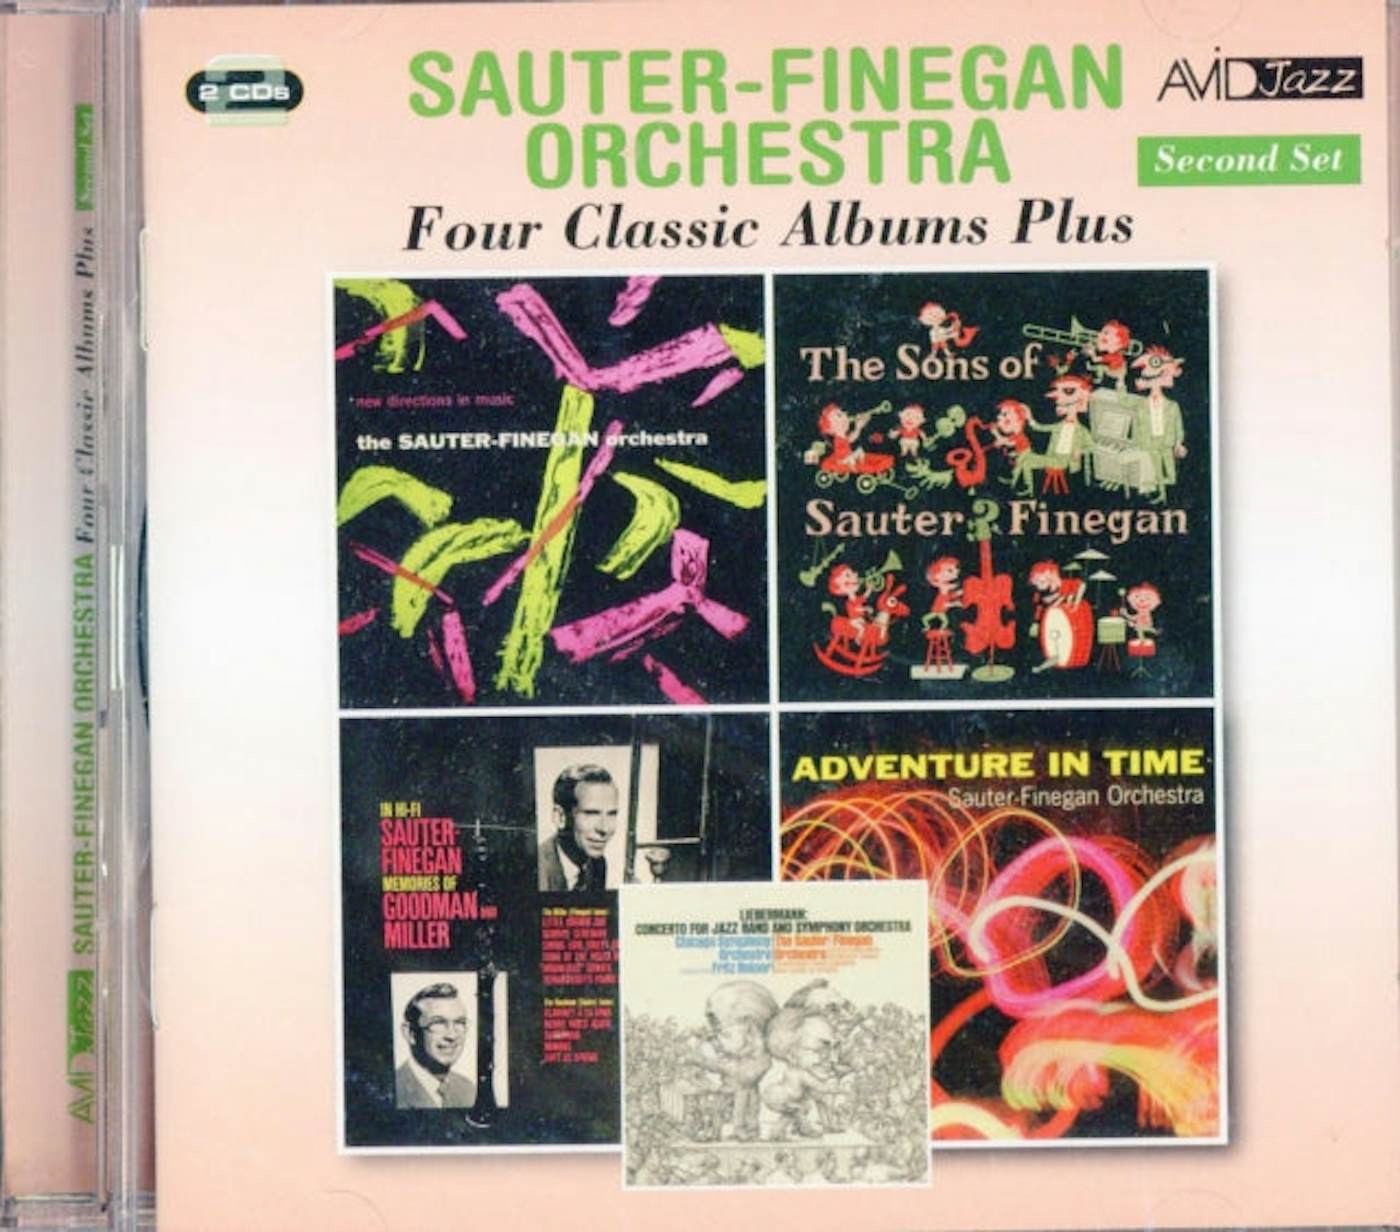 Sauter-Finegan Orchestra